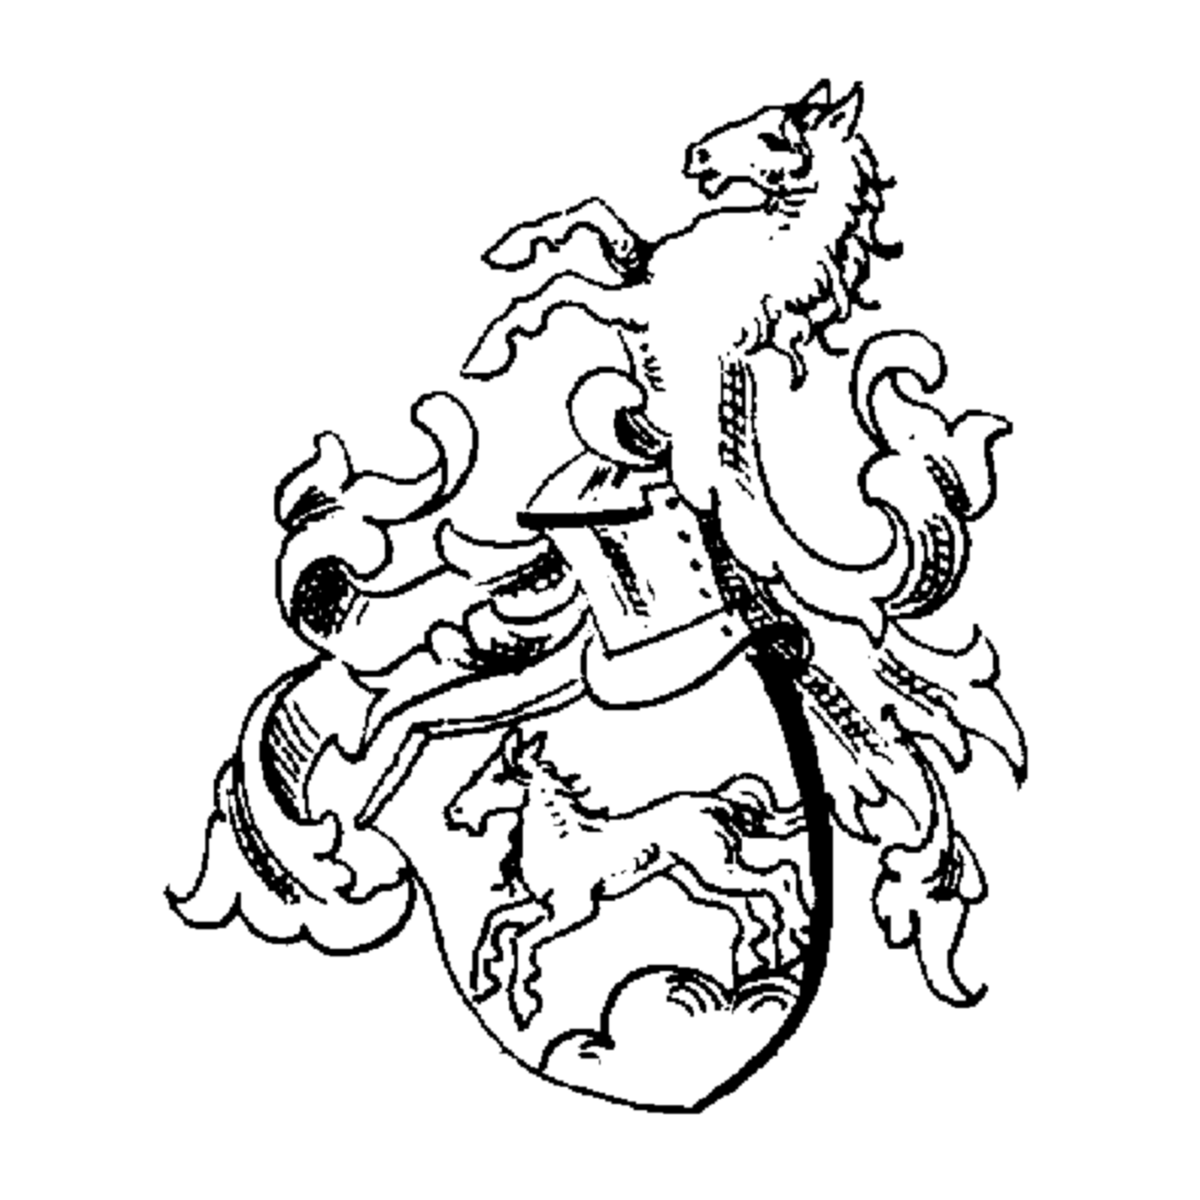 Brasão da família Ortelius